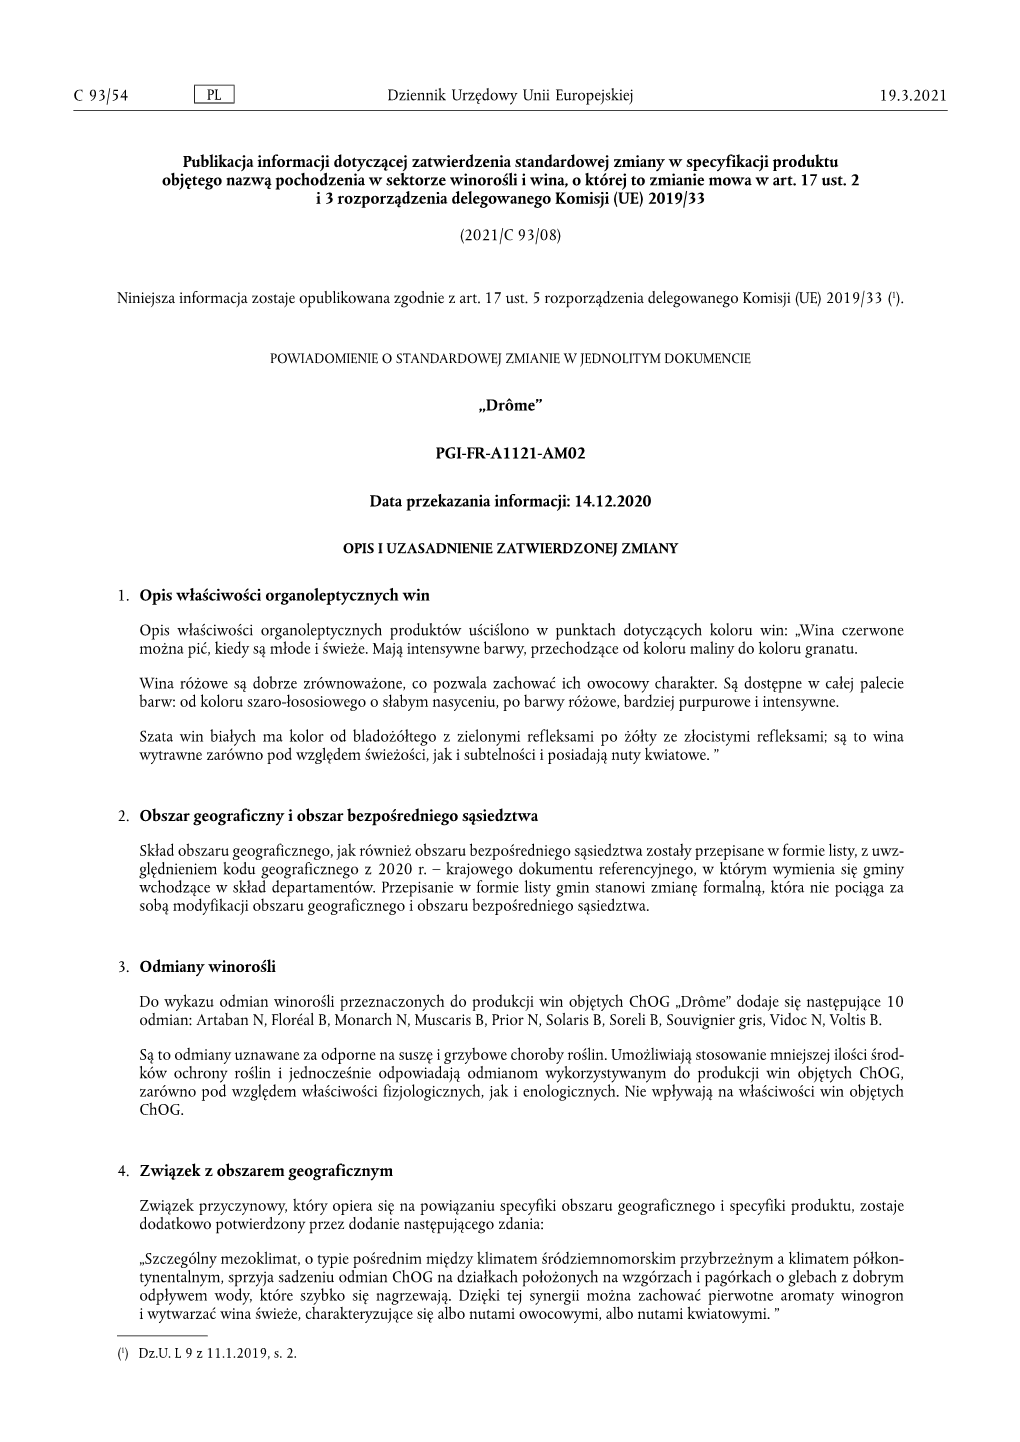 Publikacja Informacji Dotyczącej Zatwierdzenia Standardowej Zmiany W Specyfikacji Produktu Objętego Nazwą Pochodzenia W Sekto